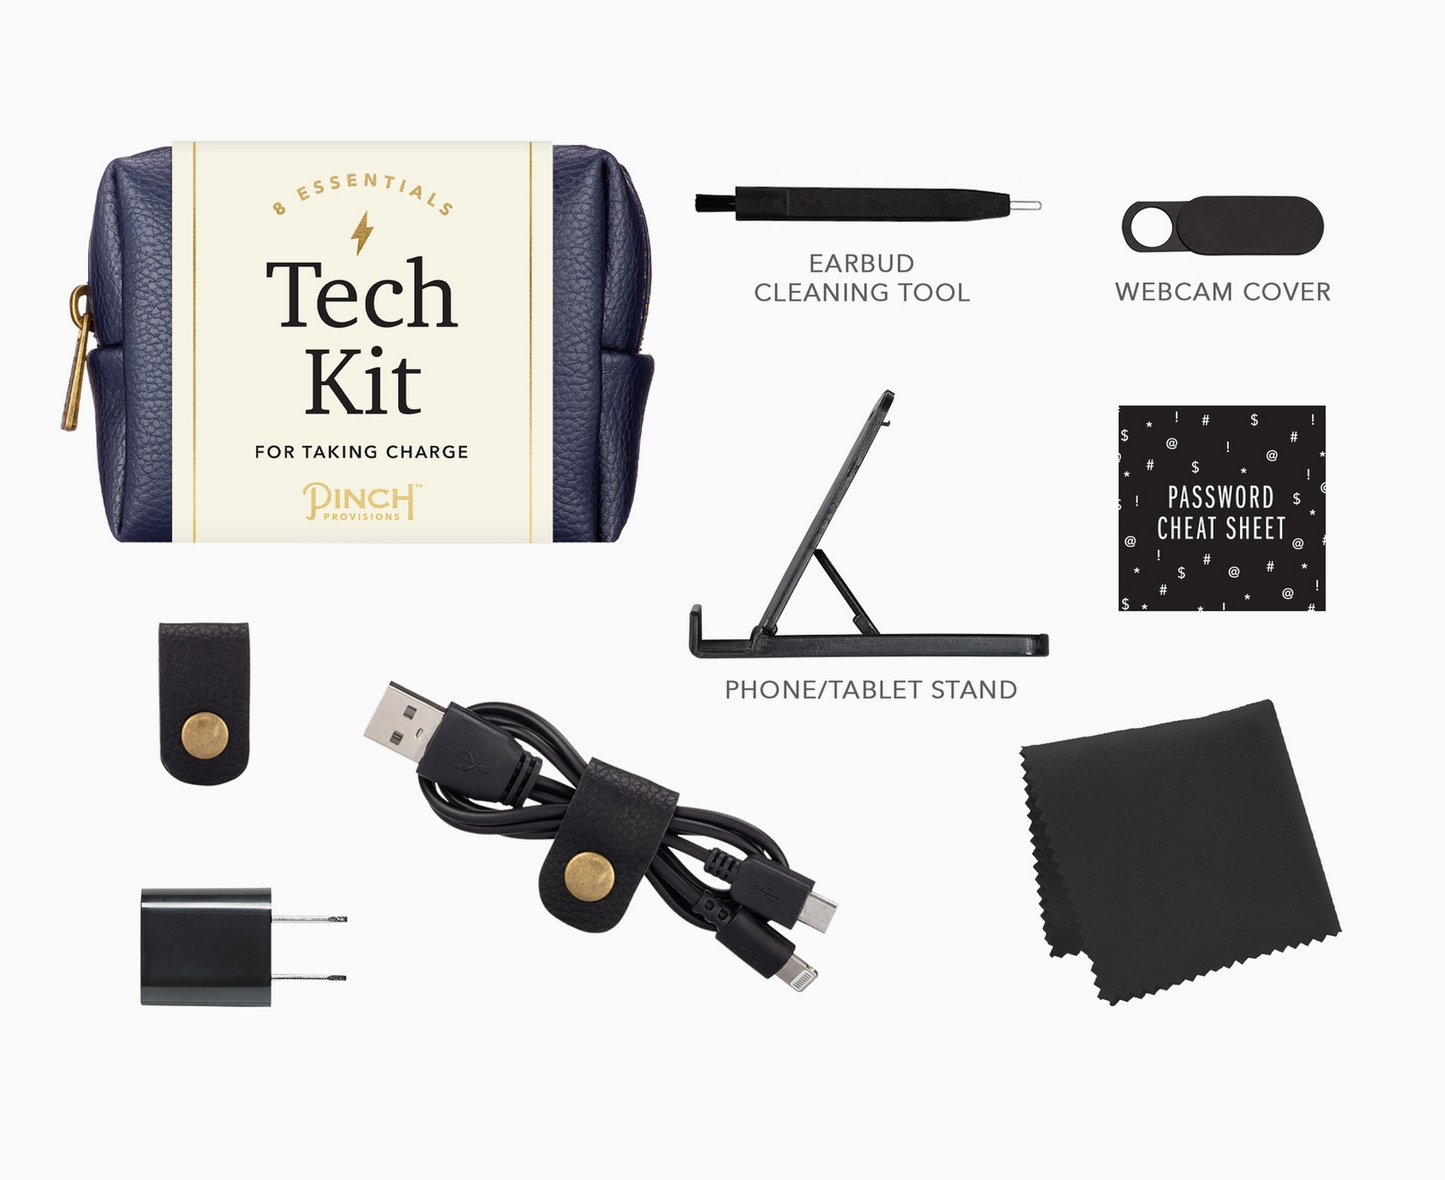 Pinch Tech Kit